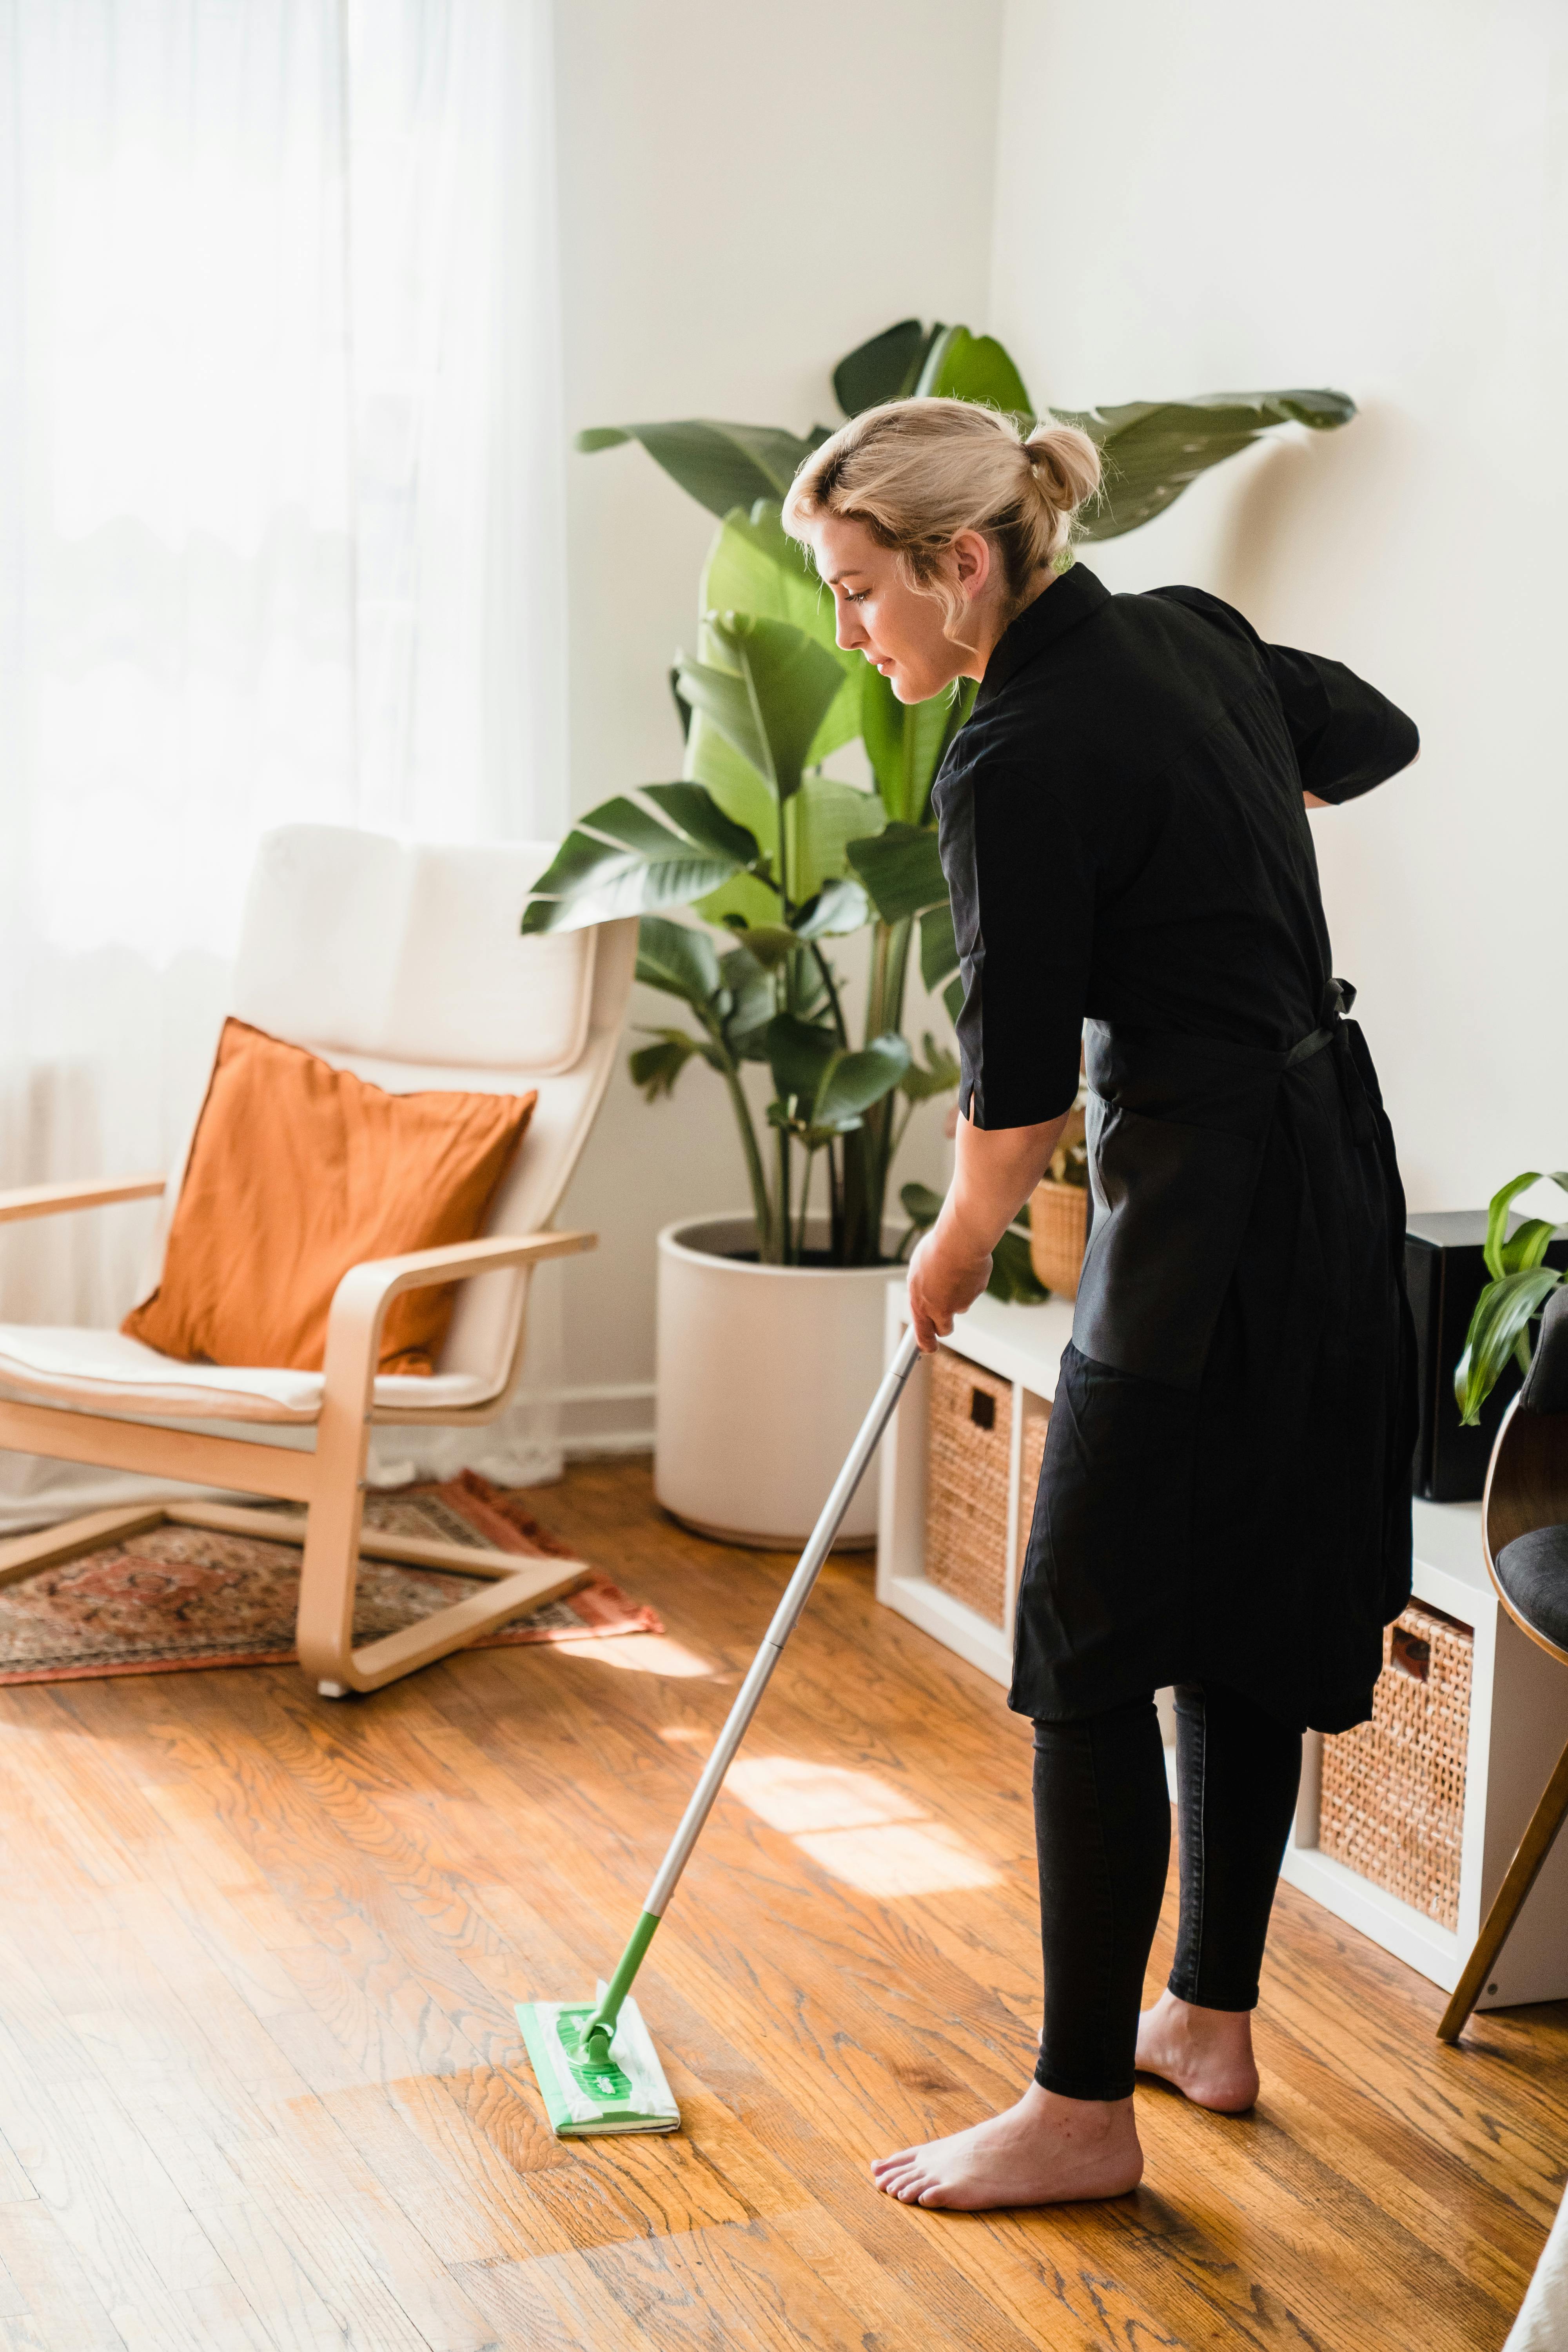 Una mujer limpiando la casa | Fuente: Pexels